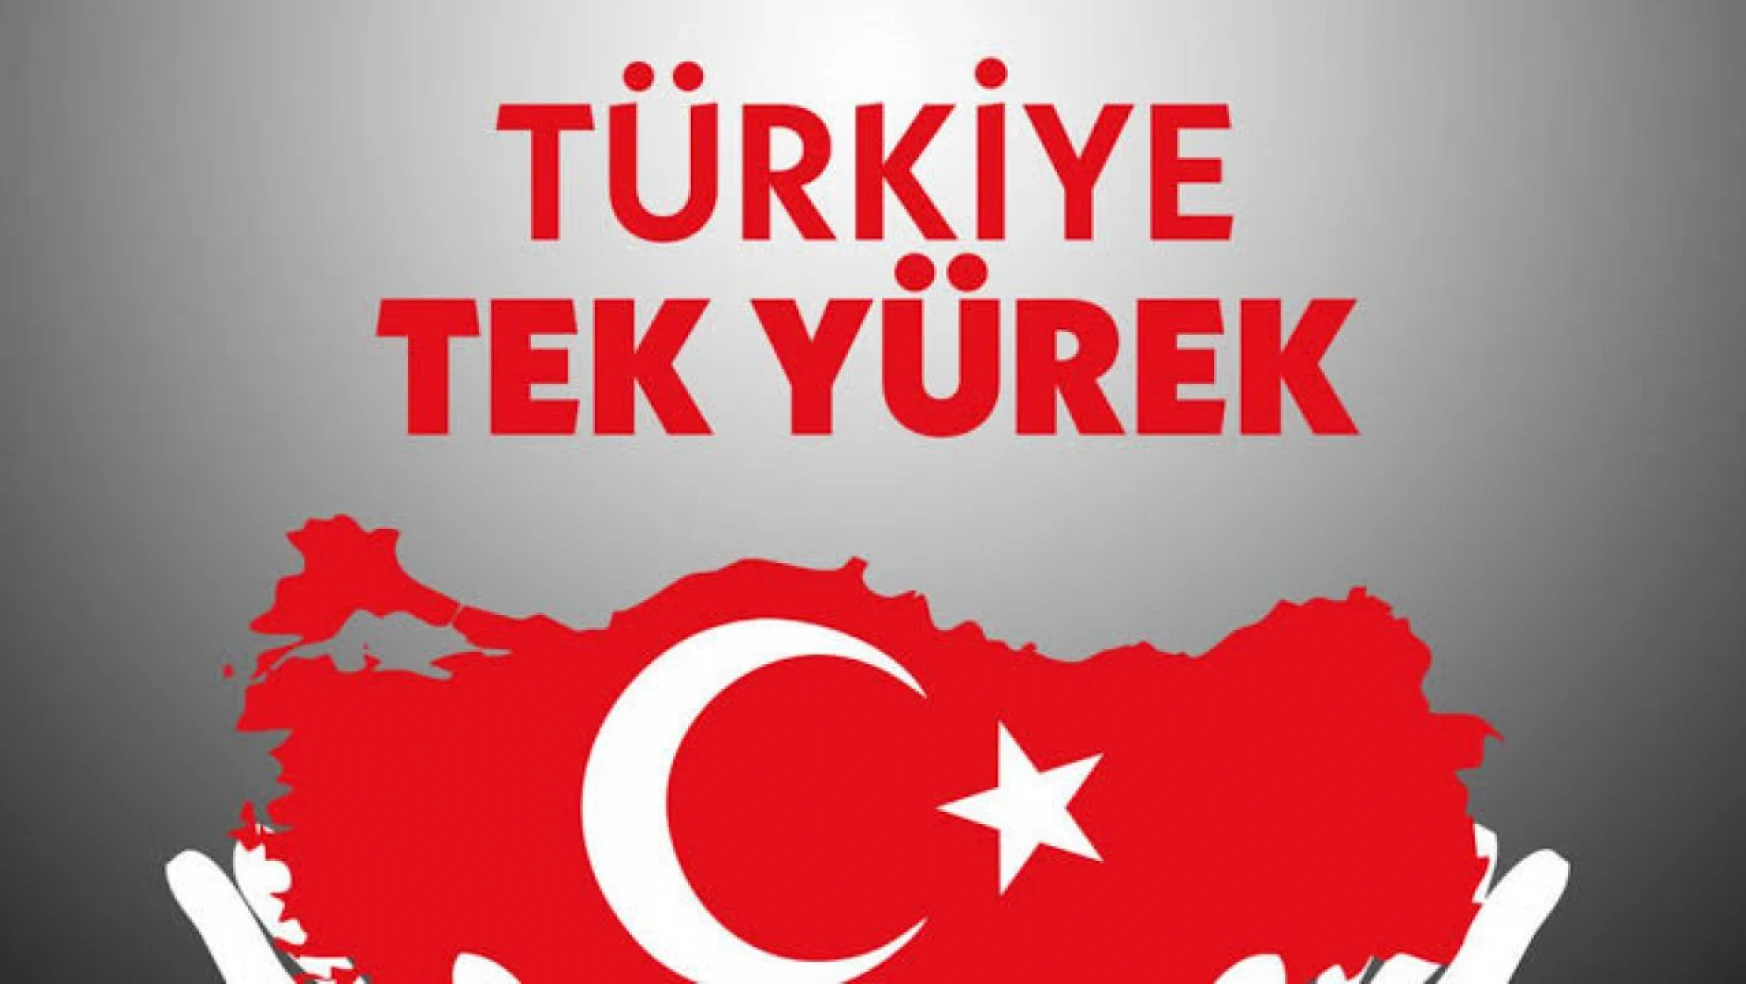 Türkiye Tek Yürek kampanyasında Söz verilen 115 milyar liralık bağışın 41 milyar liralık kısmı yatırılmadı.